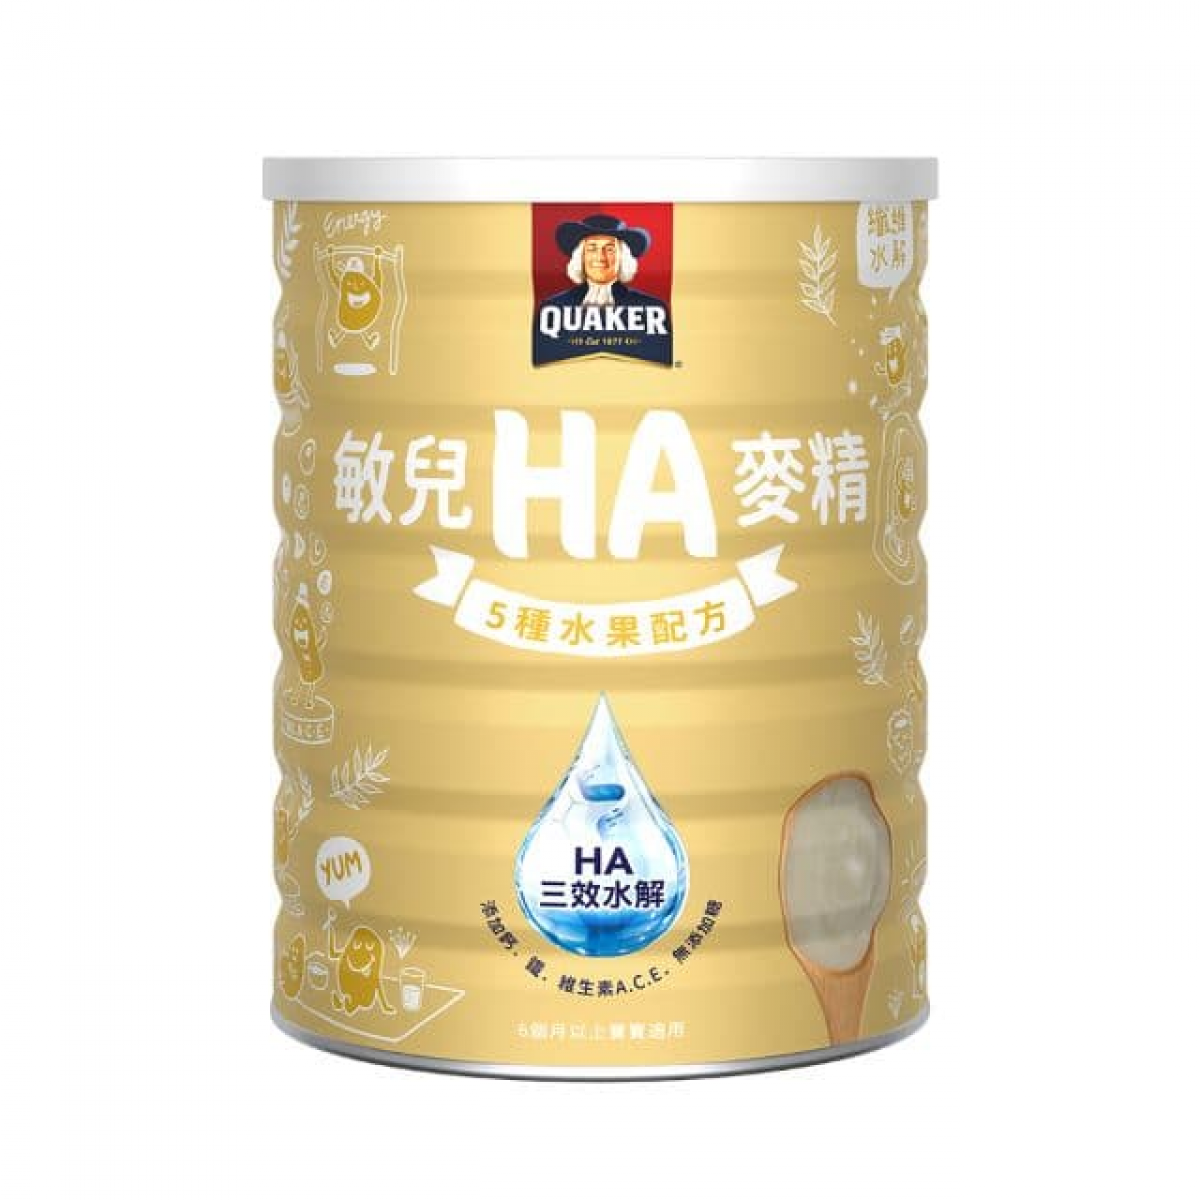 桂格-敏儿HA麦精五种水果配方-700g/罐